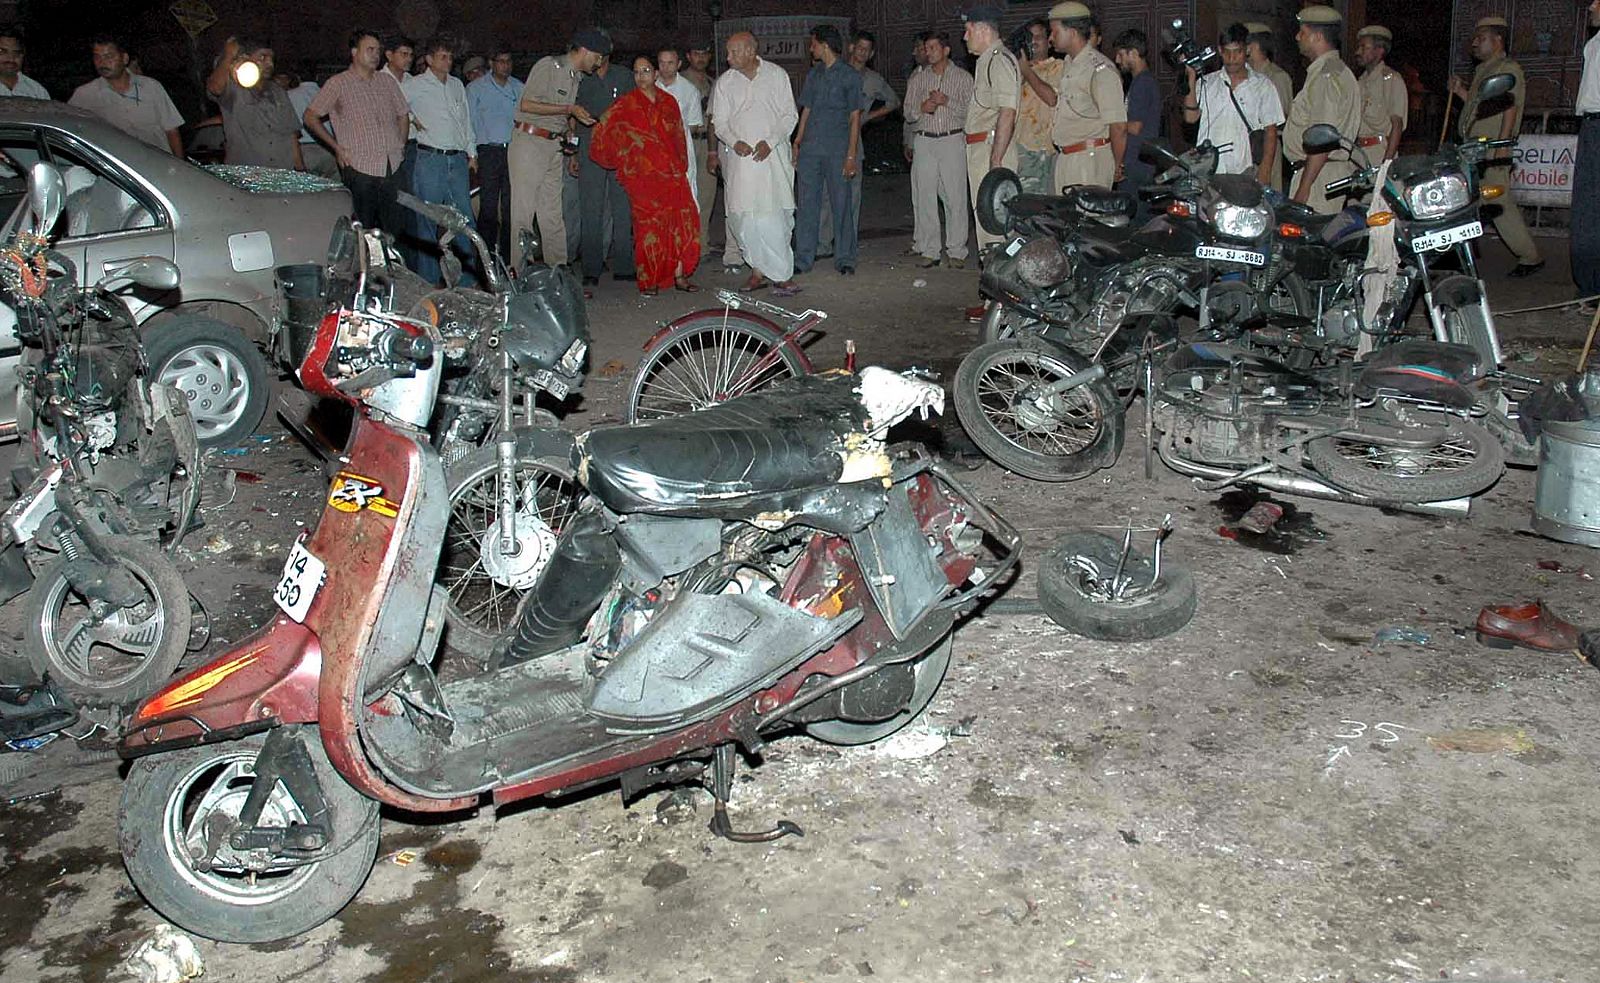 Efectos de las bombas que han matado a 63 personas y han dejado más de 200 heridos en Jaipur, India. Efectos de las bombas que han matado a 63 personas en Jaipur, la India.